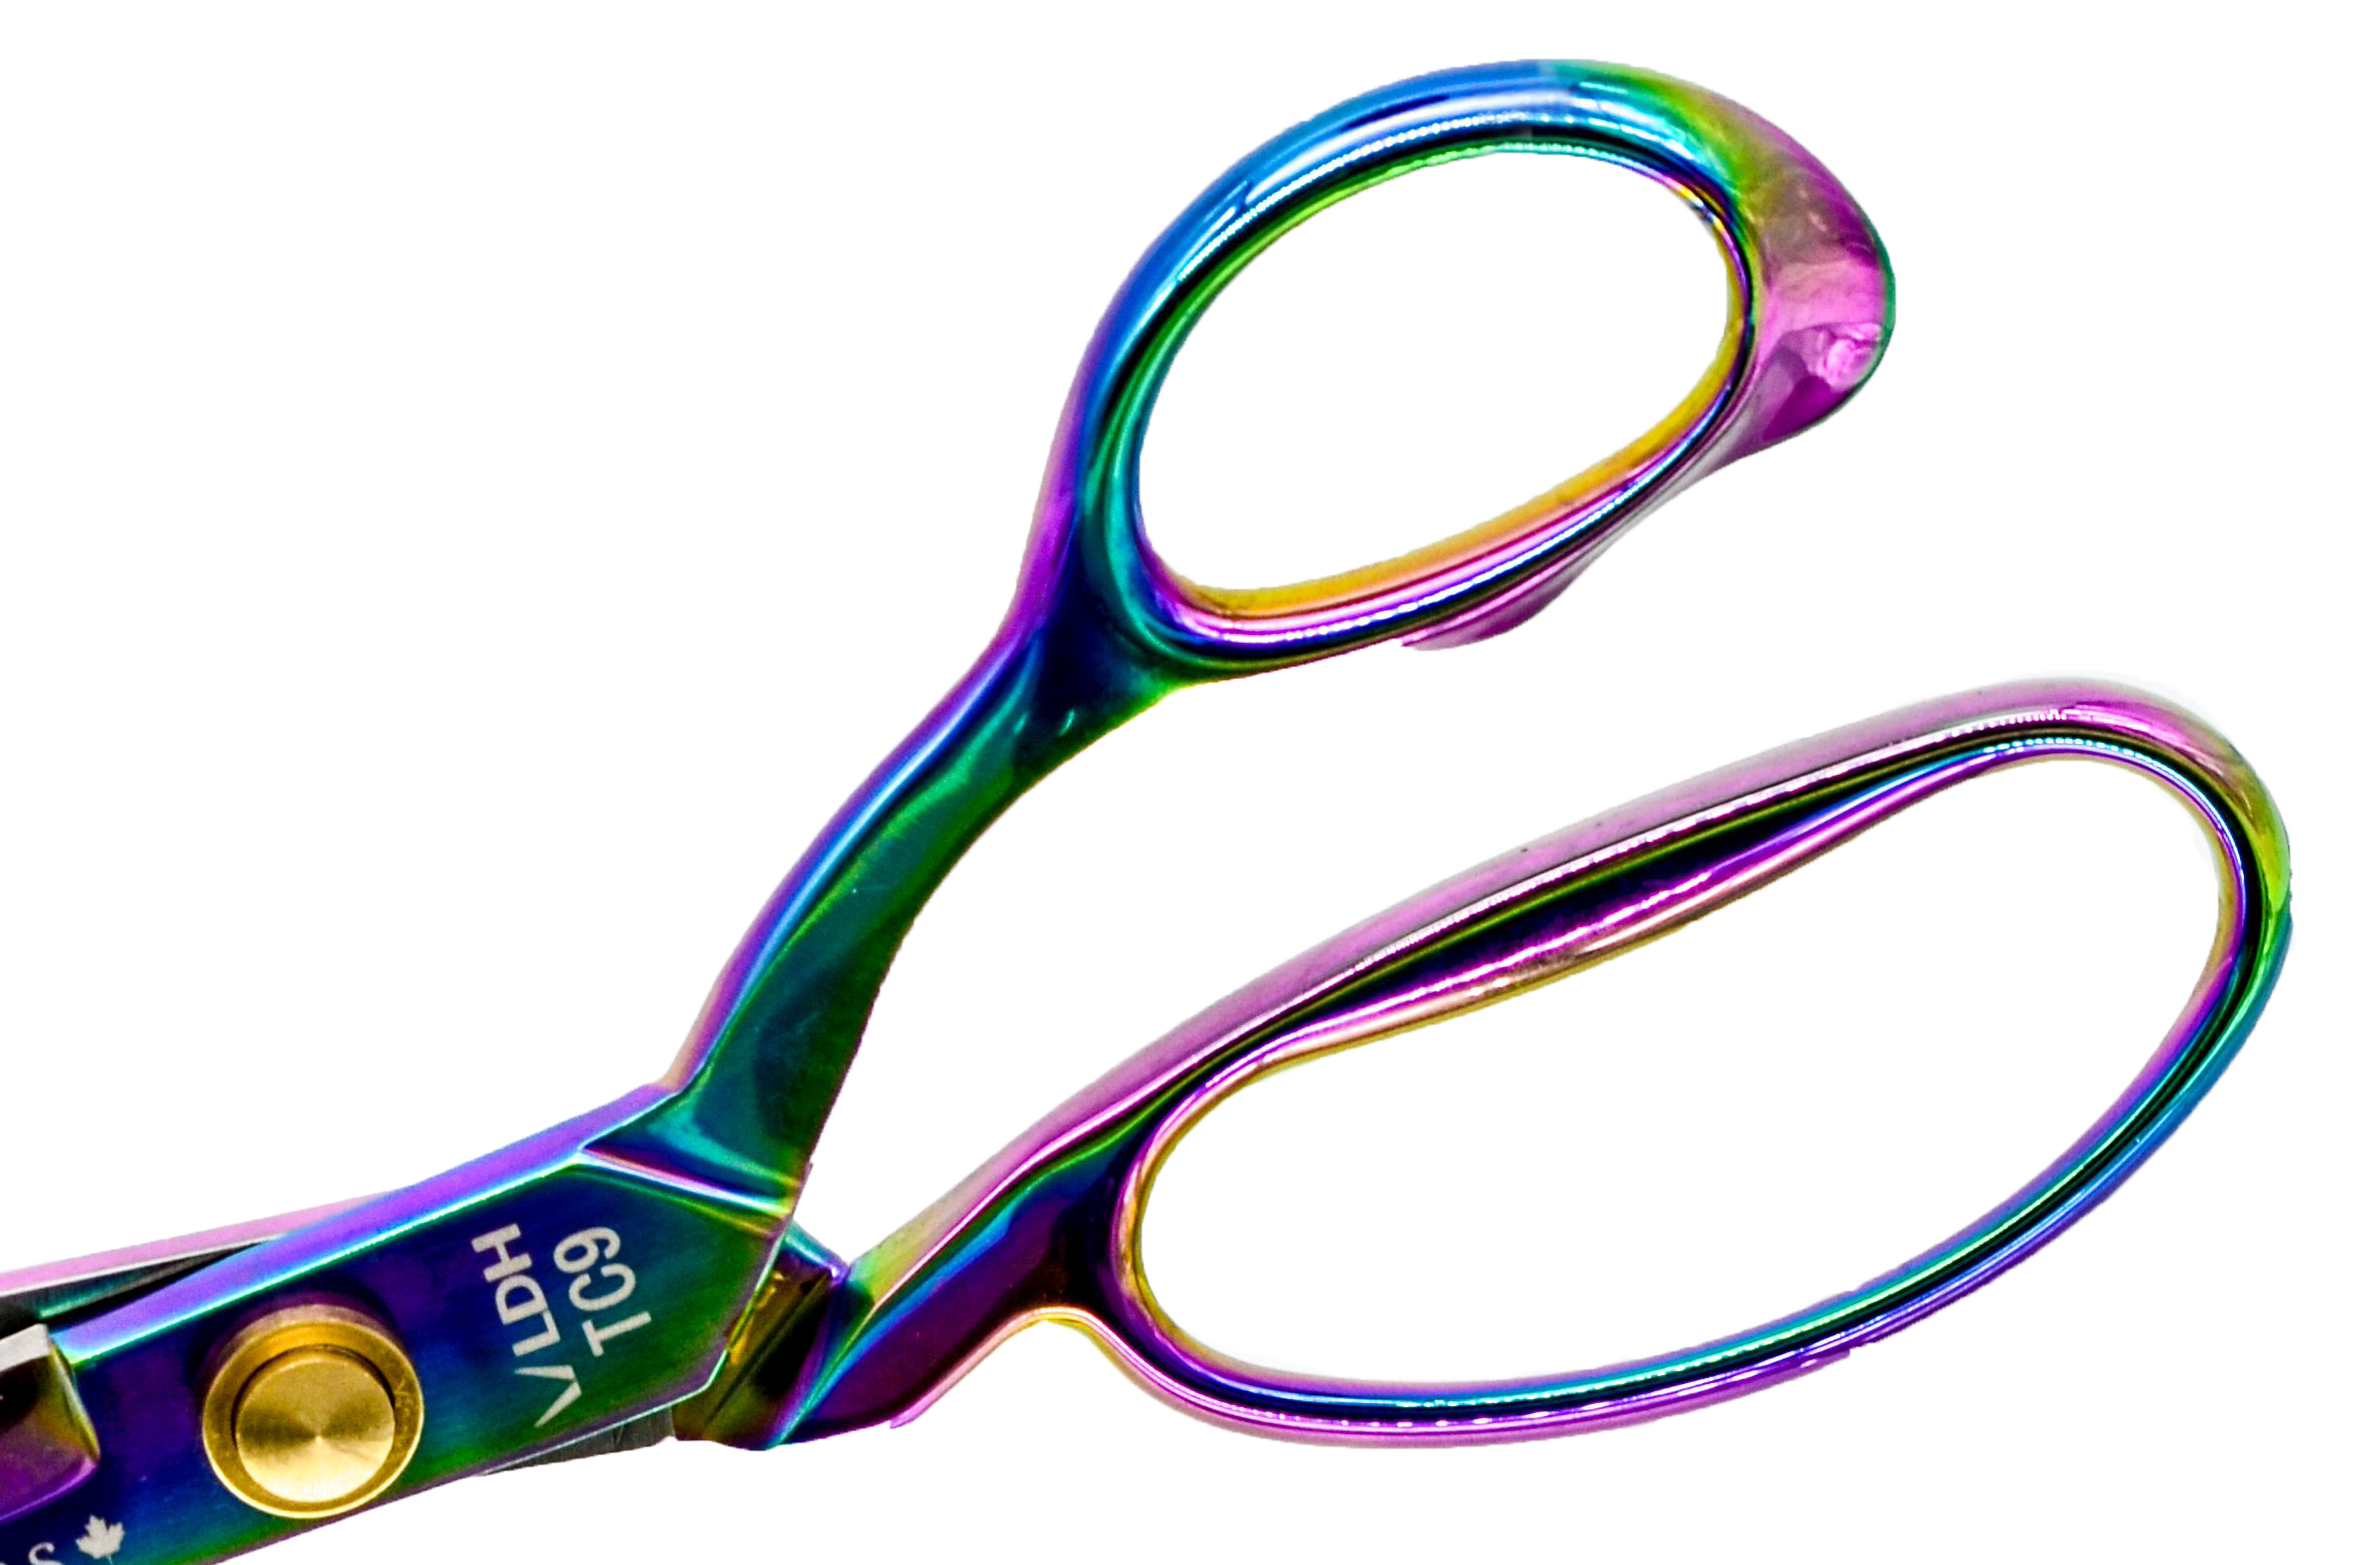 rainbow Prism fabric scissors